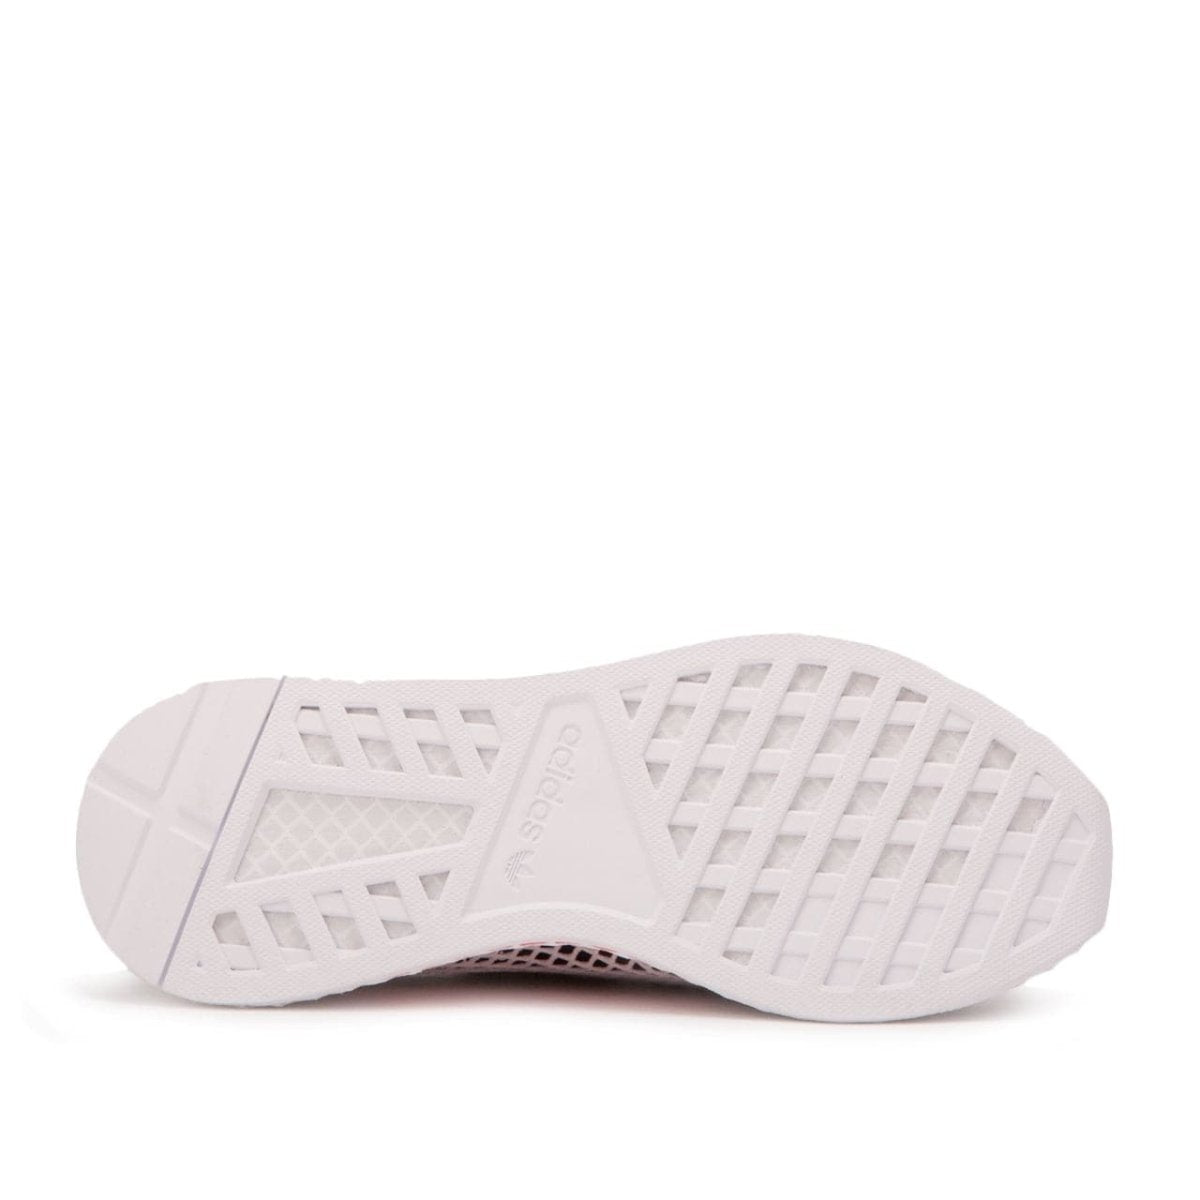 adidas Deerupt Runner (Schwarz / Weiß / Mint)  - Allike Store